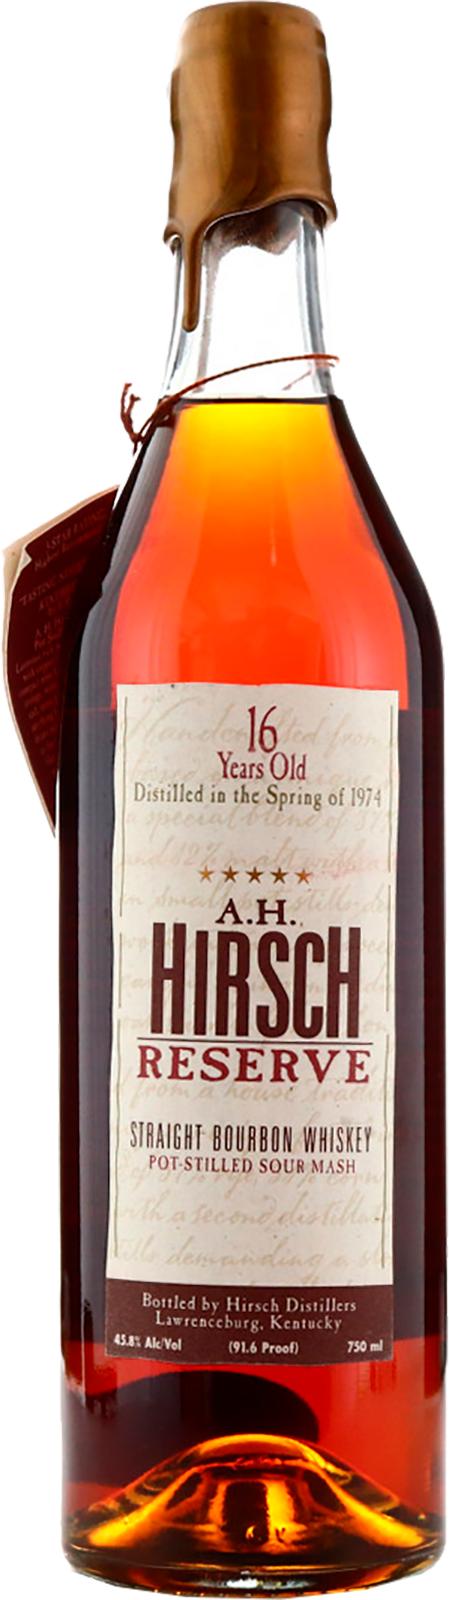 A.H. Hirsch 1974 Reserve Dripping Gold Wax New American Oak Barrels 45.8% 750ml